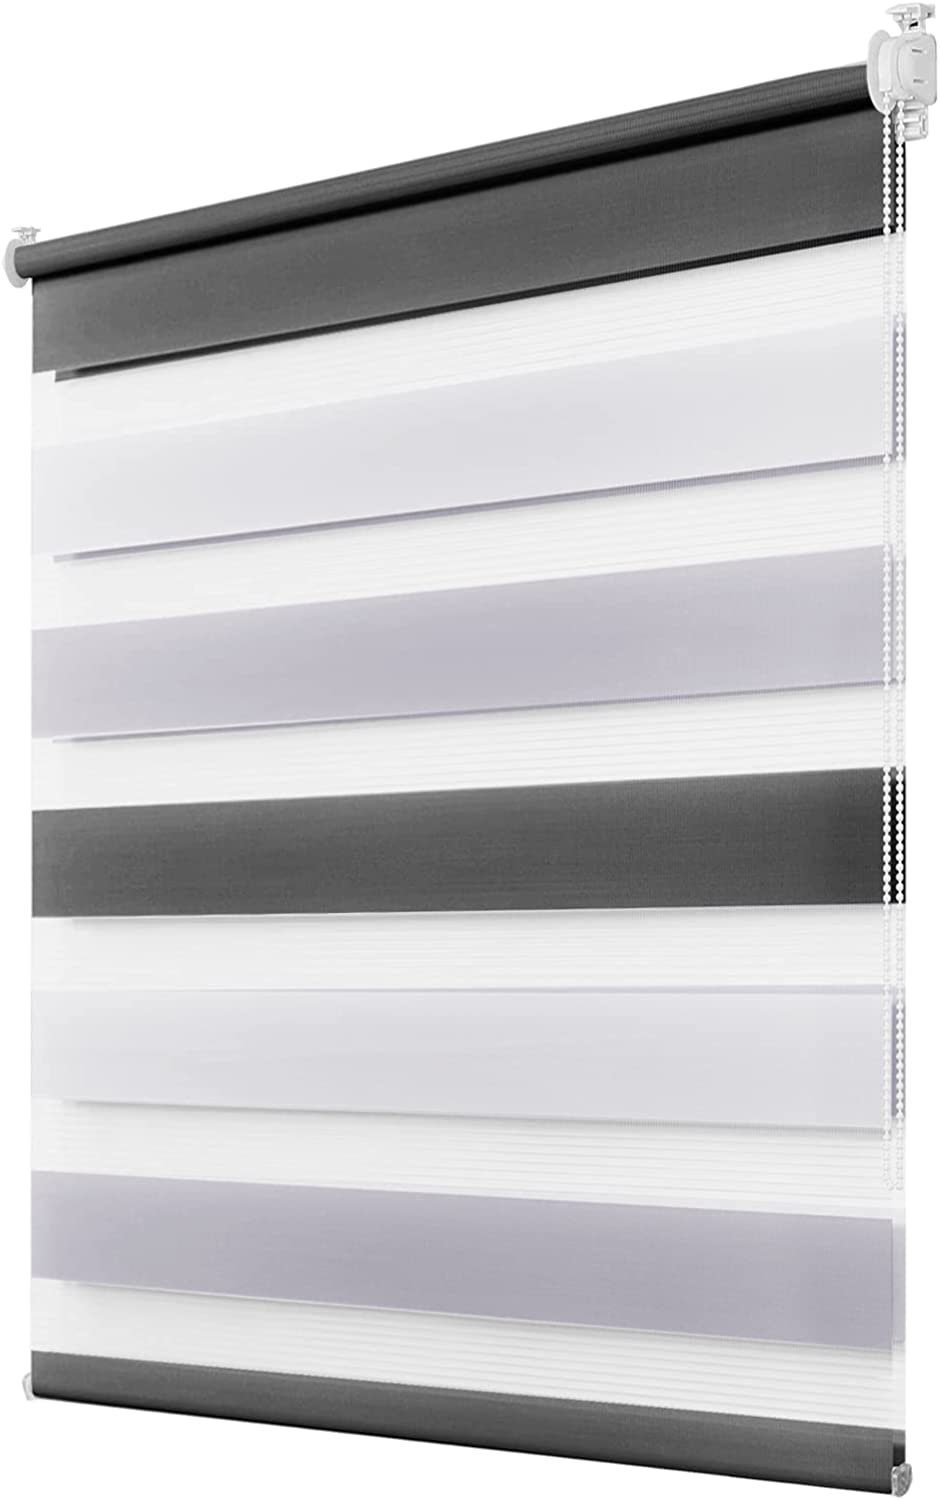 Doppelrollo Fensterrollos Ohne Bohren, Vkele, 130cm/160cm, klemmfix,klemmträger, Sonnenschutz, Lichtdurchlässig und Verdunkelnd. Weiß-Grau-Anthrazit